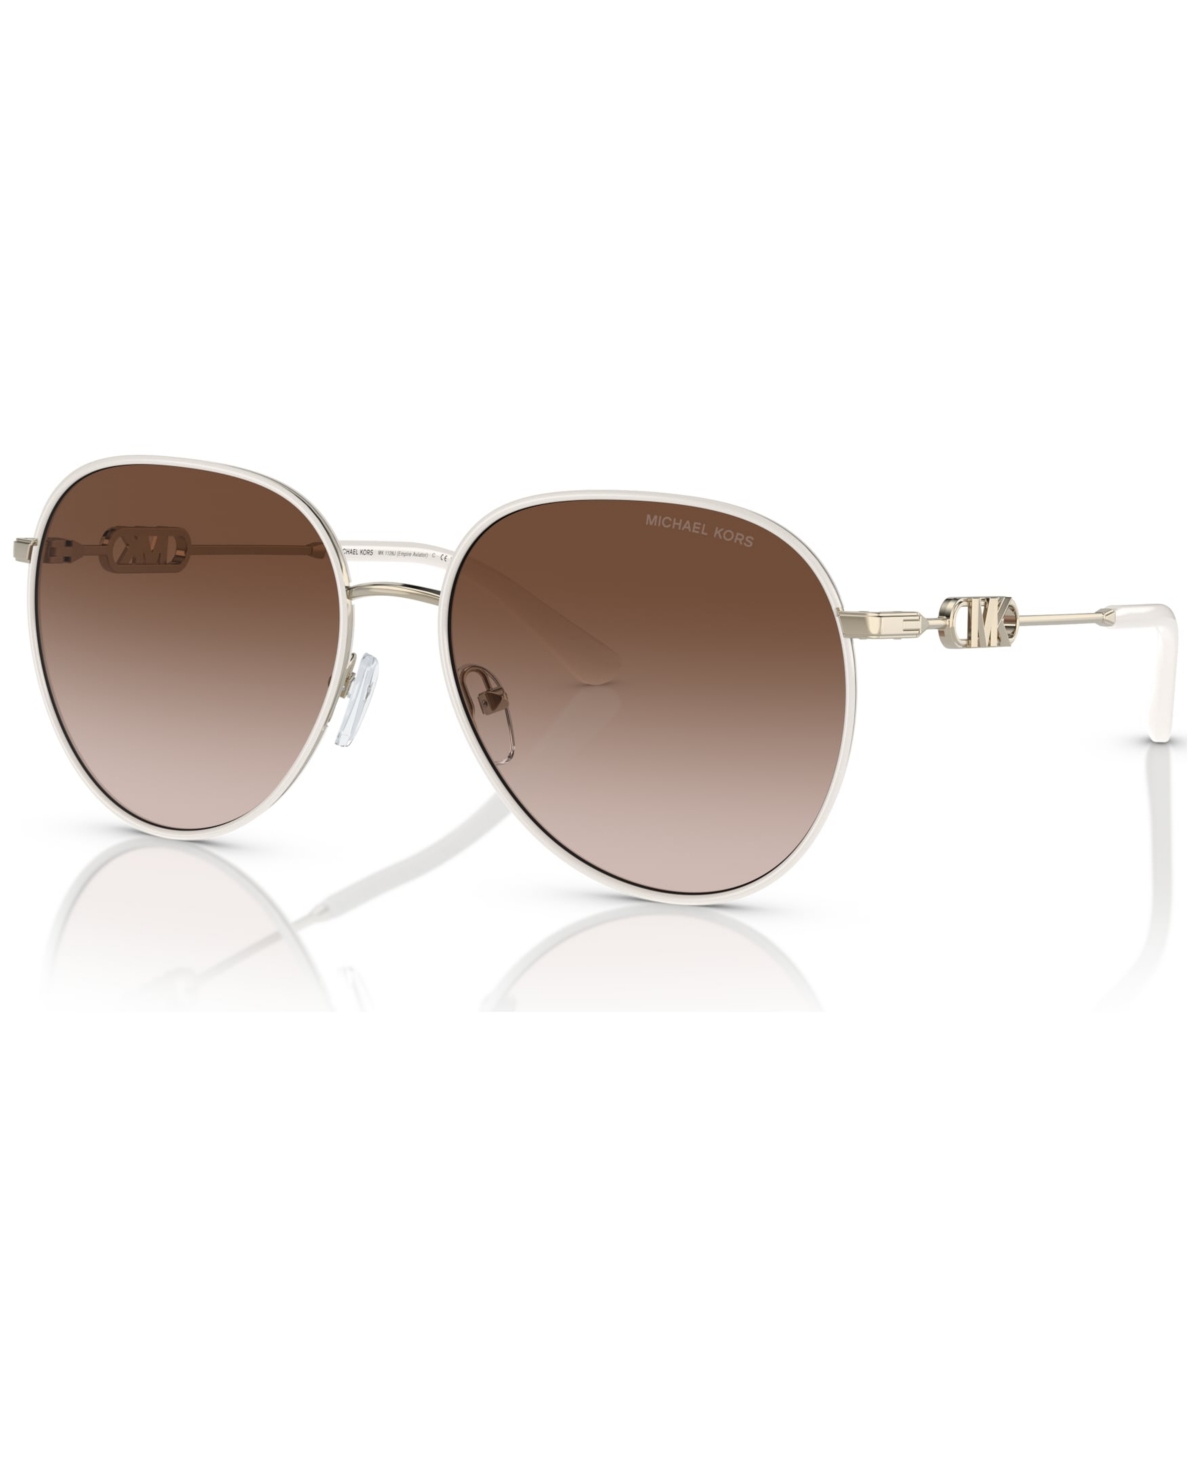 Michael Kors Women's Sunglasses, Empire In Light Gold-tone,white